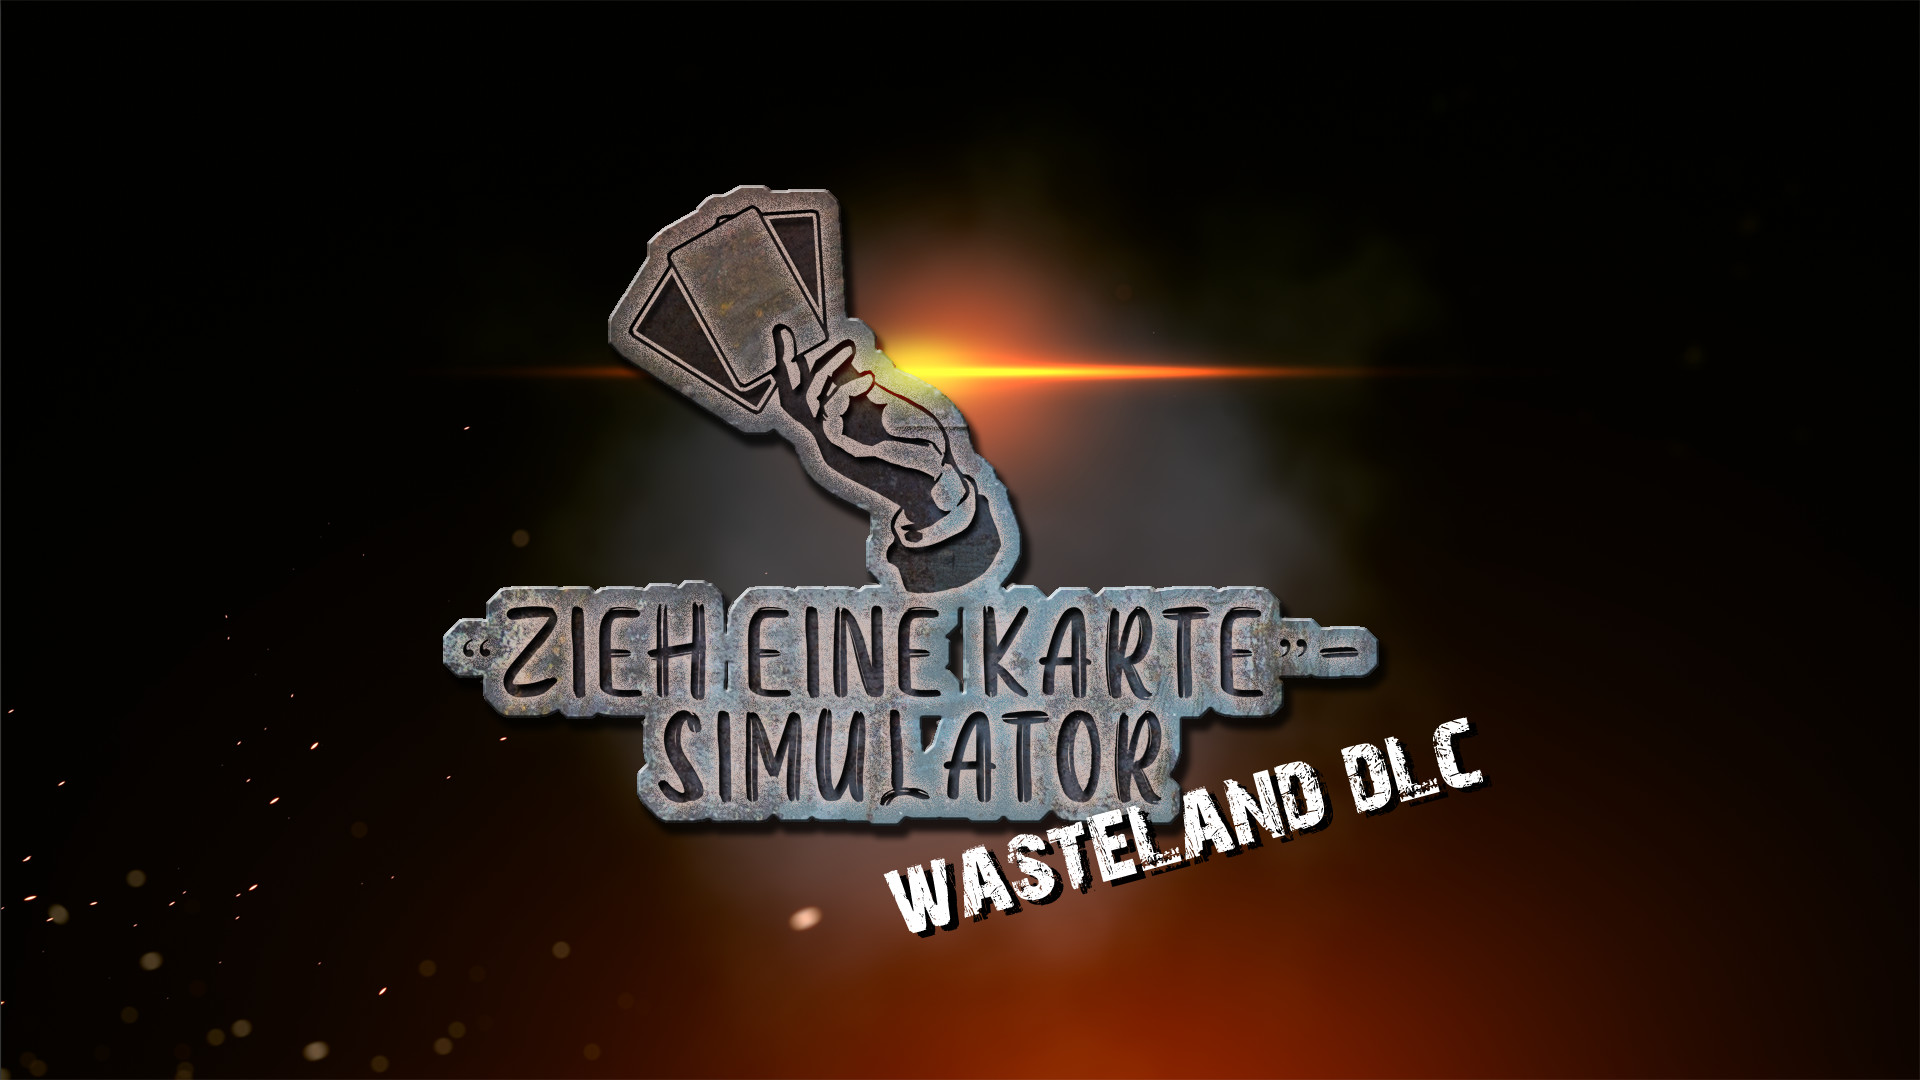 screenshot of "Zieh eine Karte"-Simulator 2